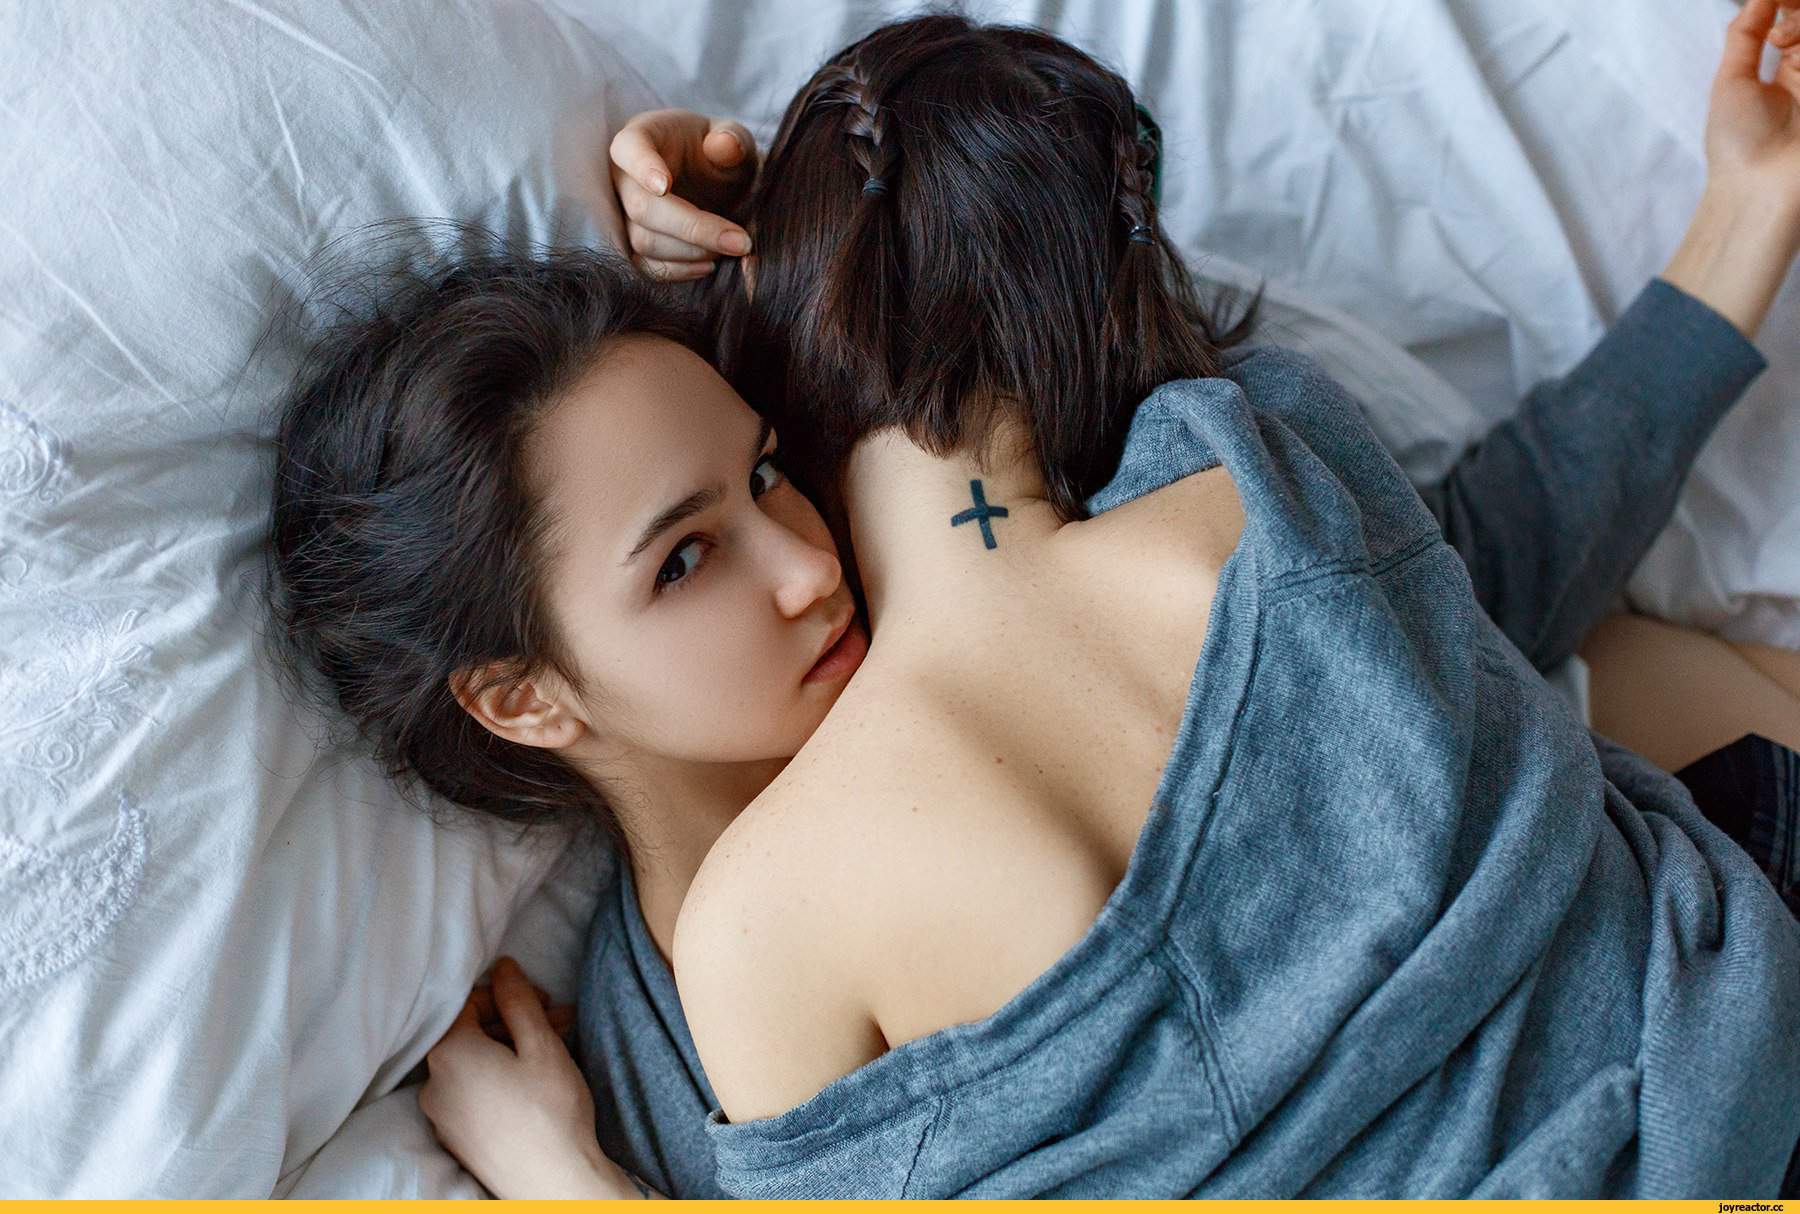 Молодая девка с темными волосами ласкается с приятелем и его подружкой на кровати